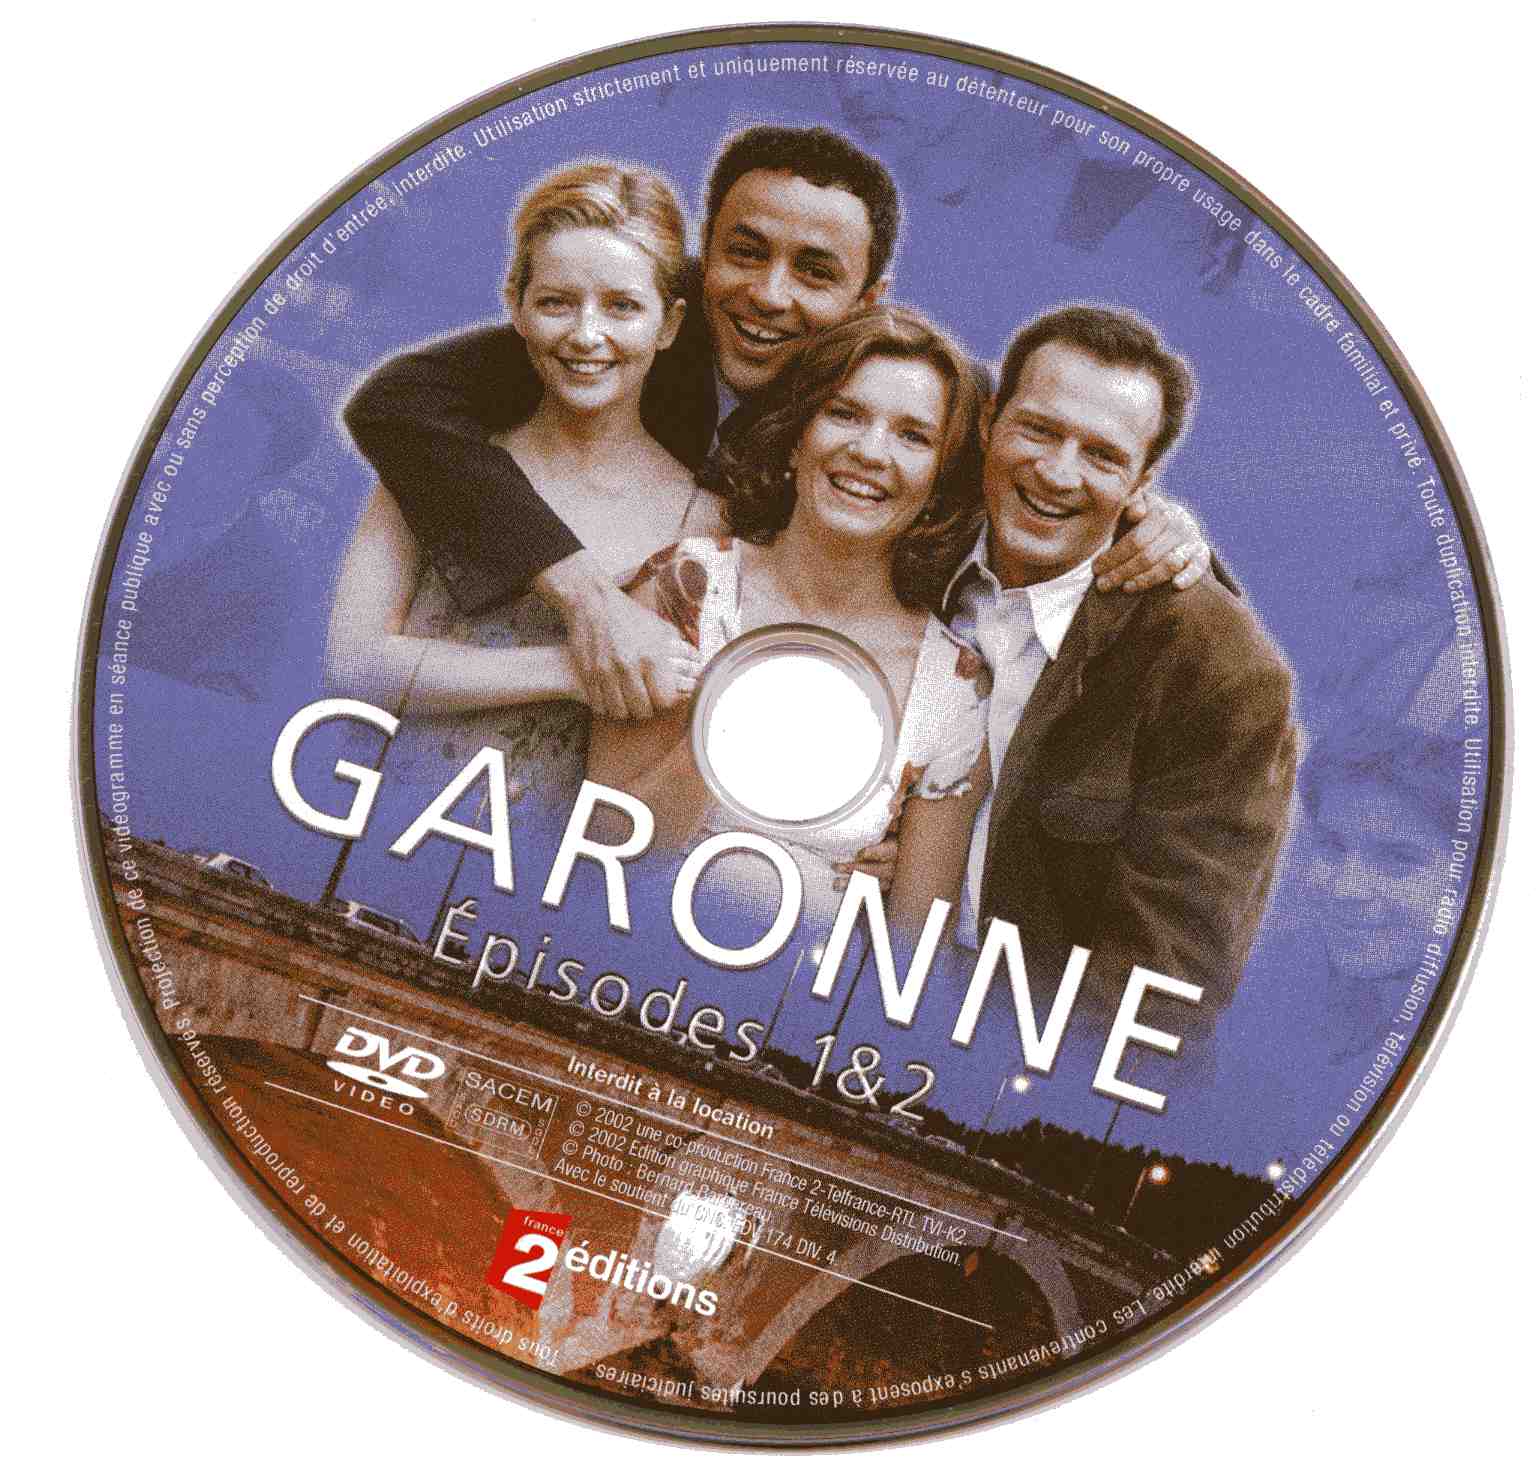 Garonne (disc 1)